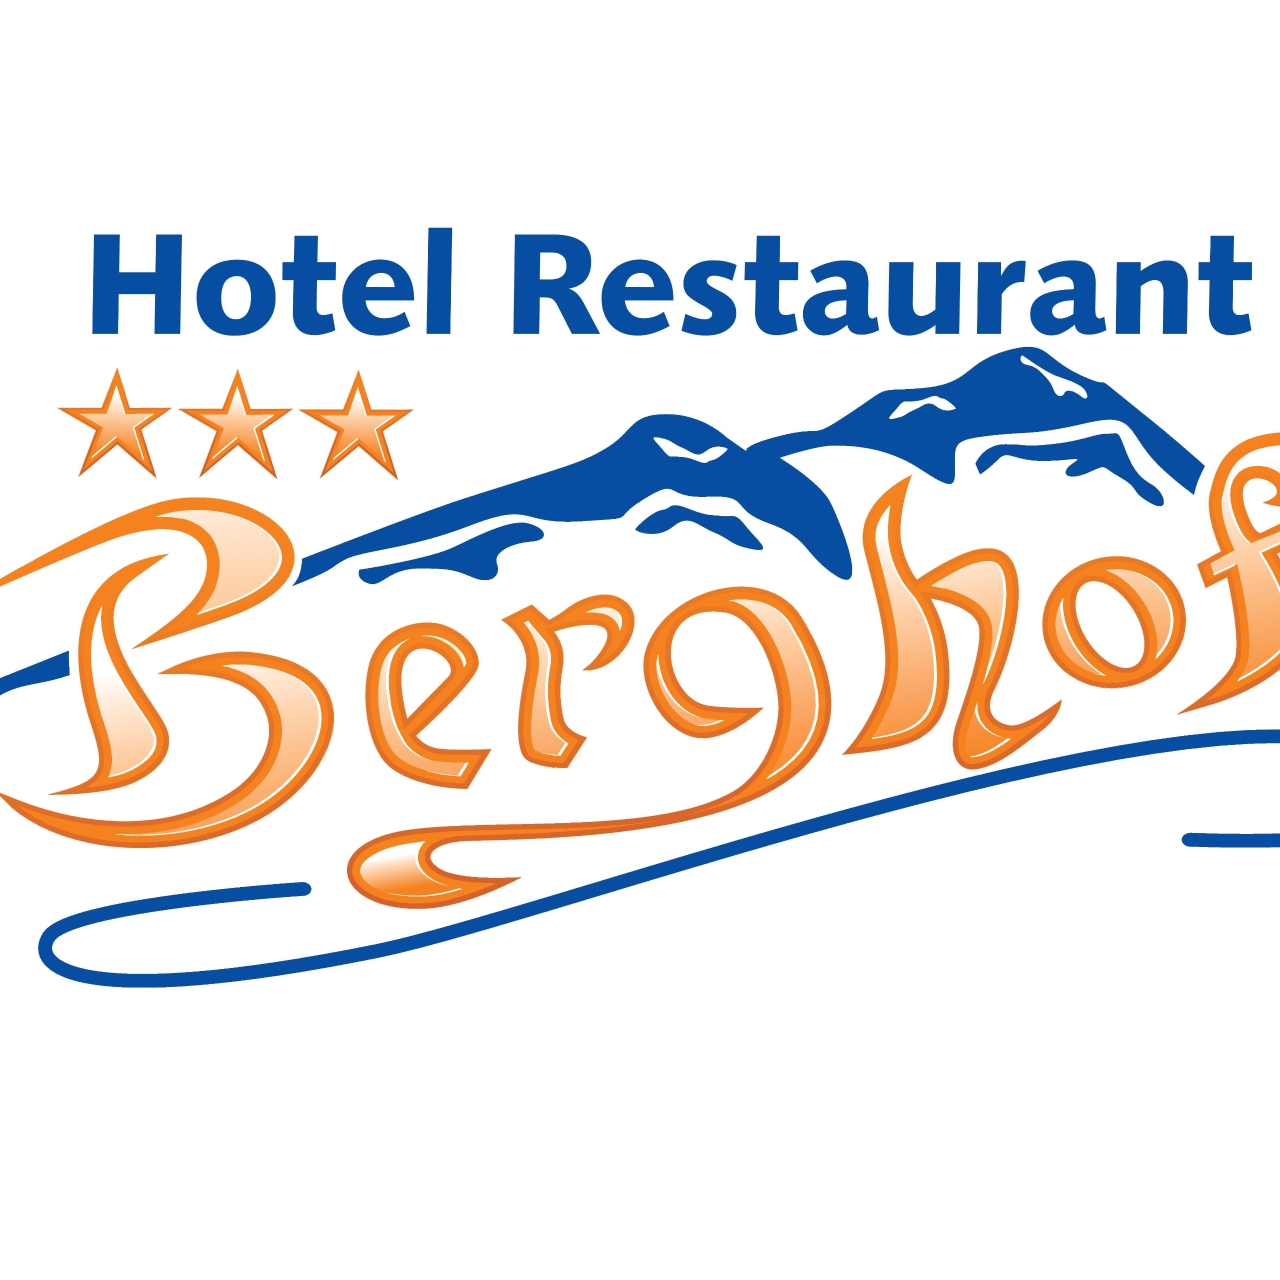 Hotel Berghof in Berghausen bei HRS günstig buchen